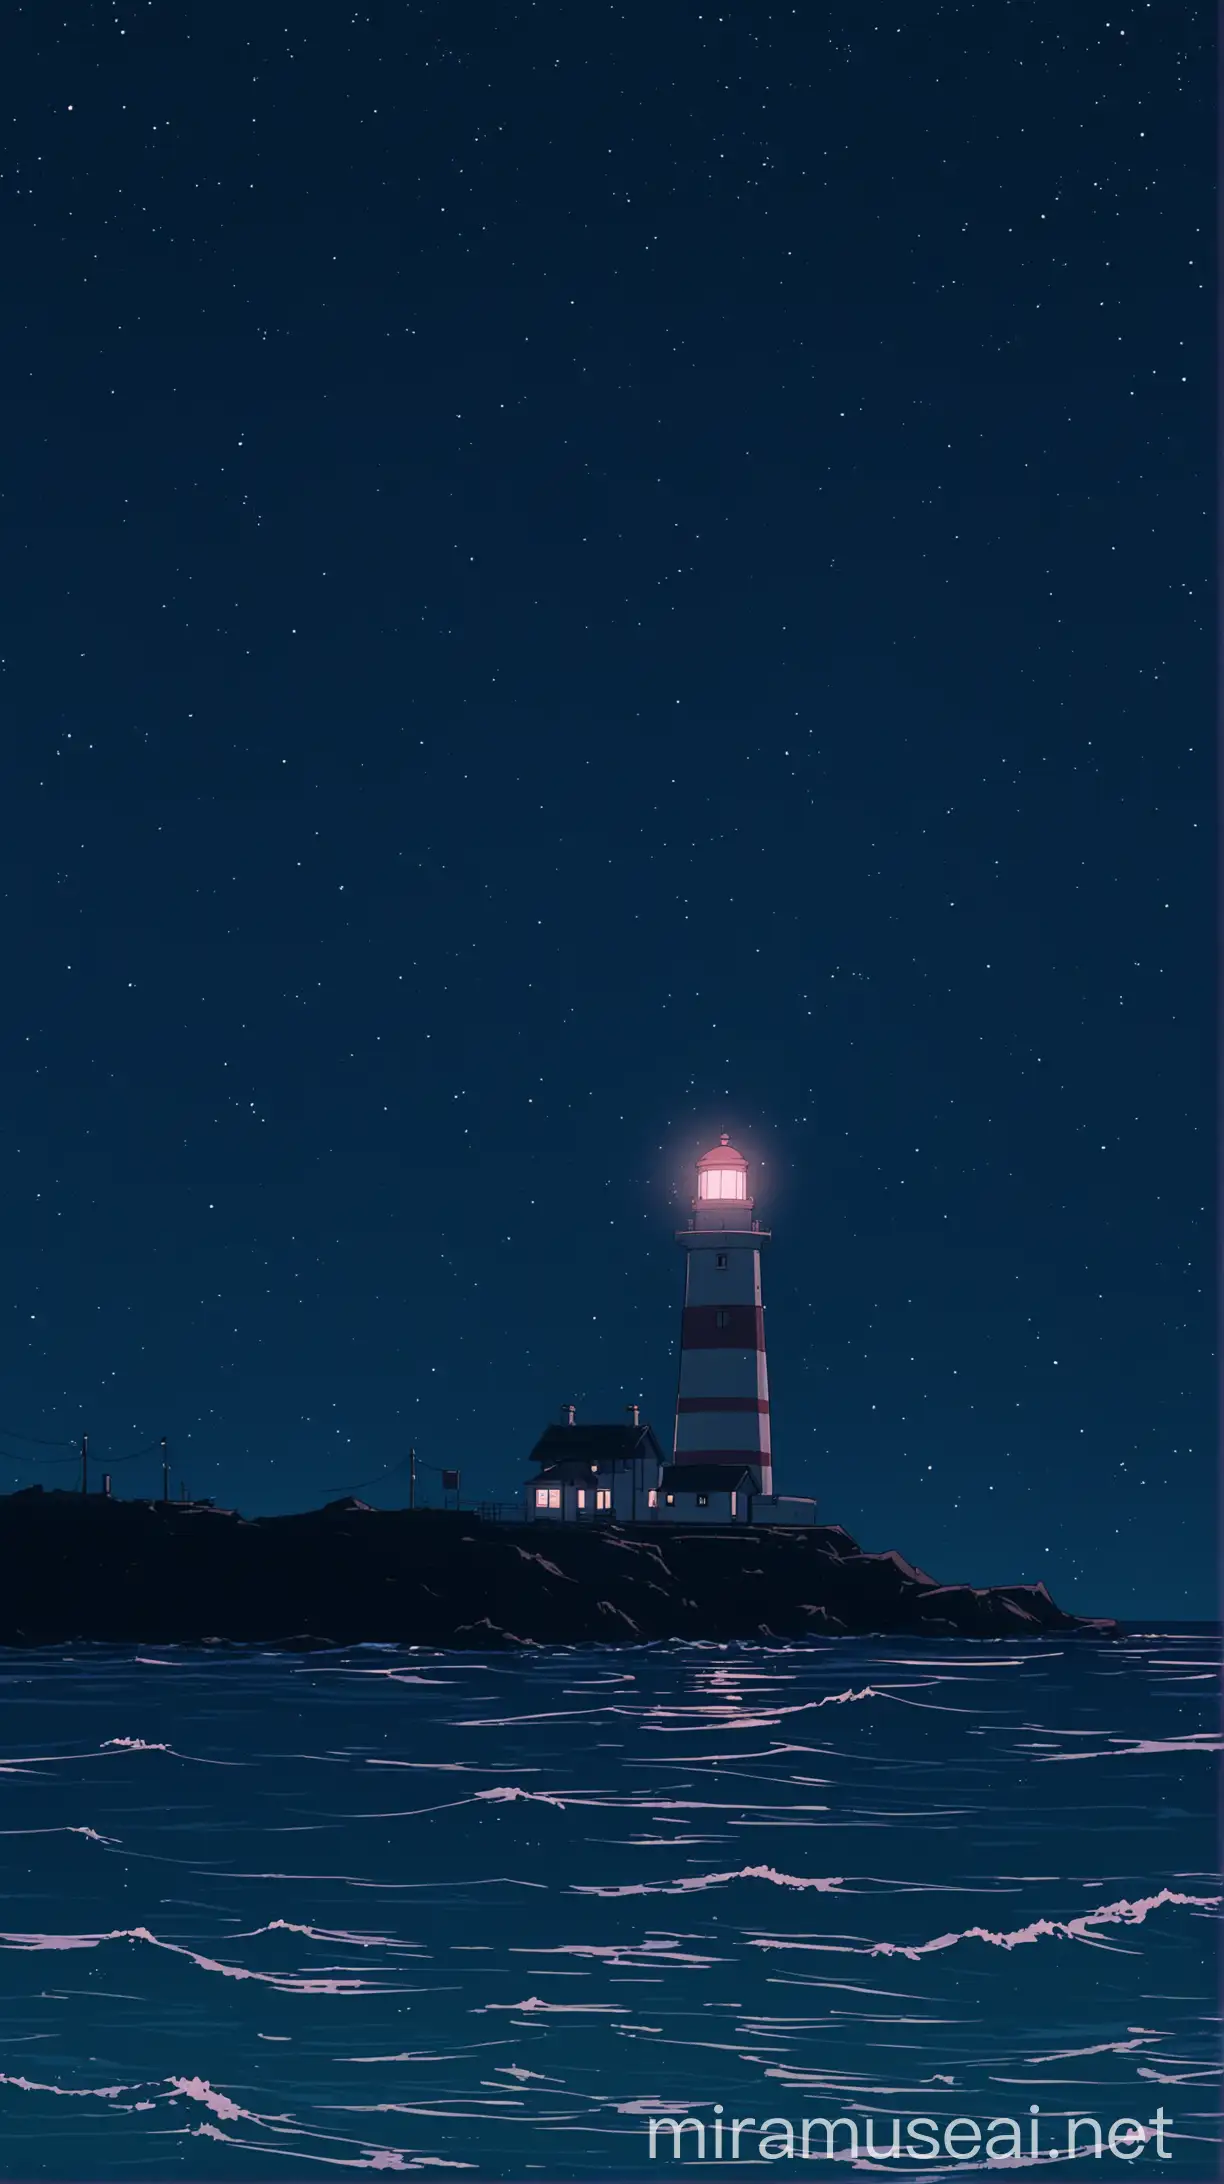 anime cute aesthetic, lighthouse, ocean, midnight, lo-fi